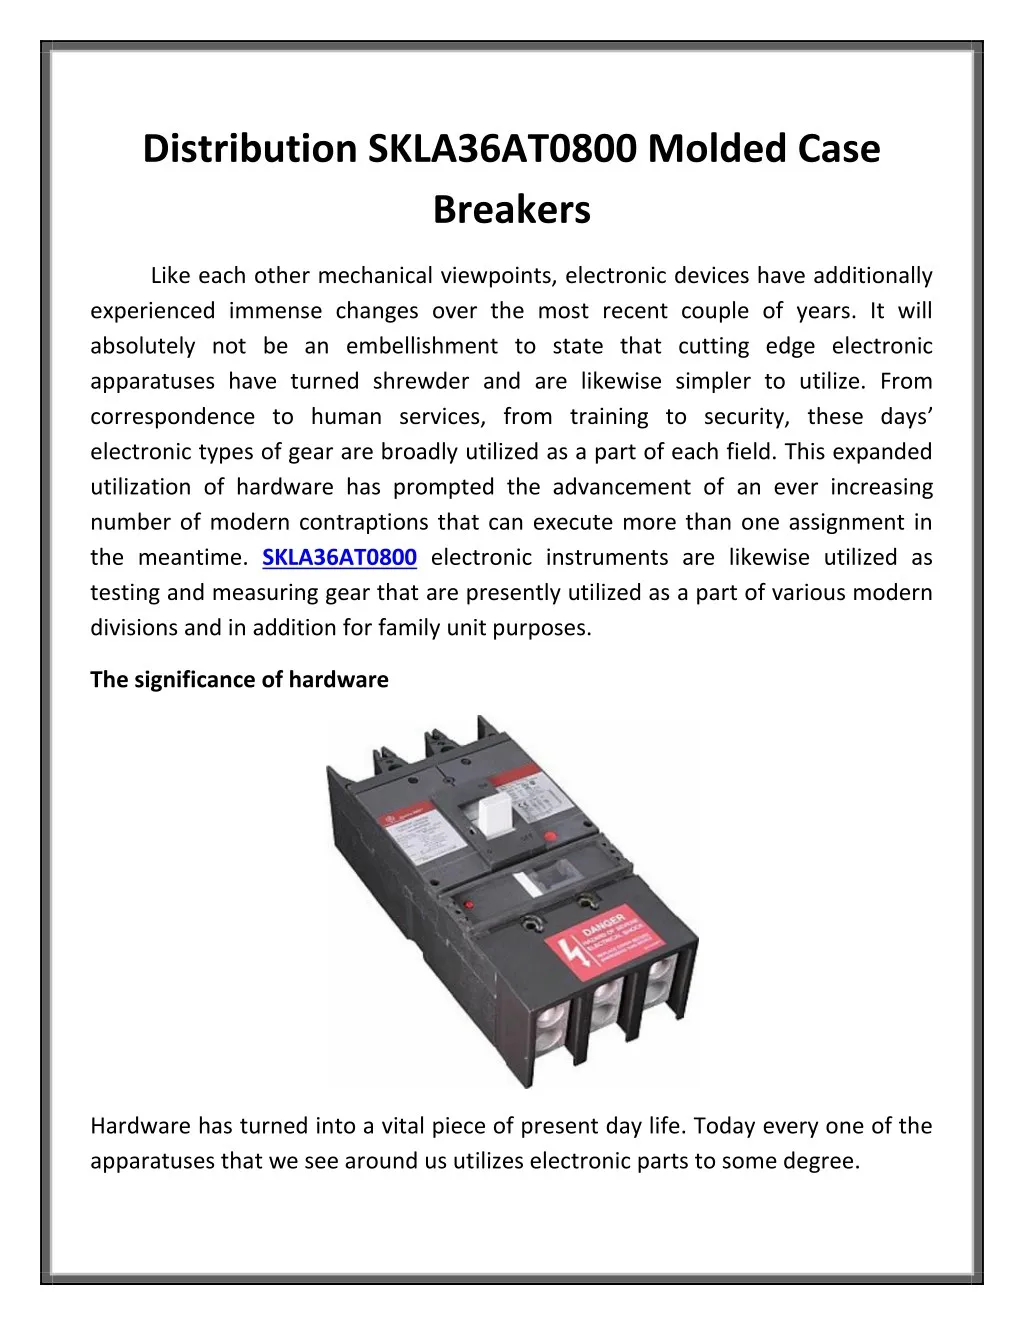 distribution skla36at0800 molded case breakers